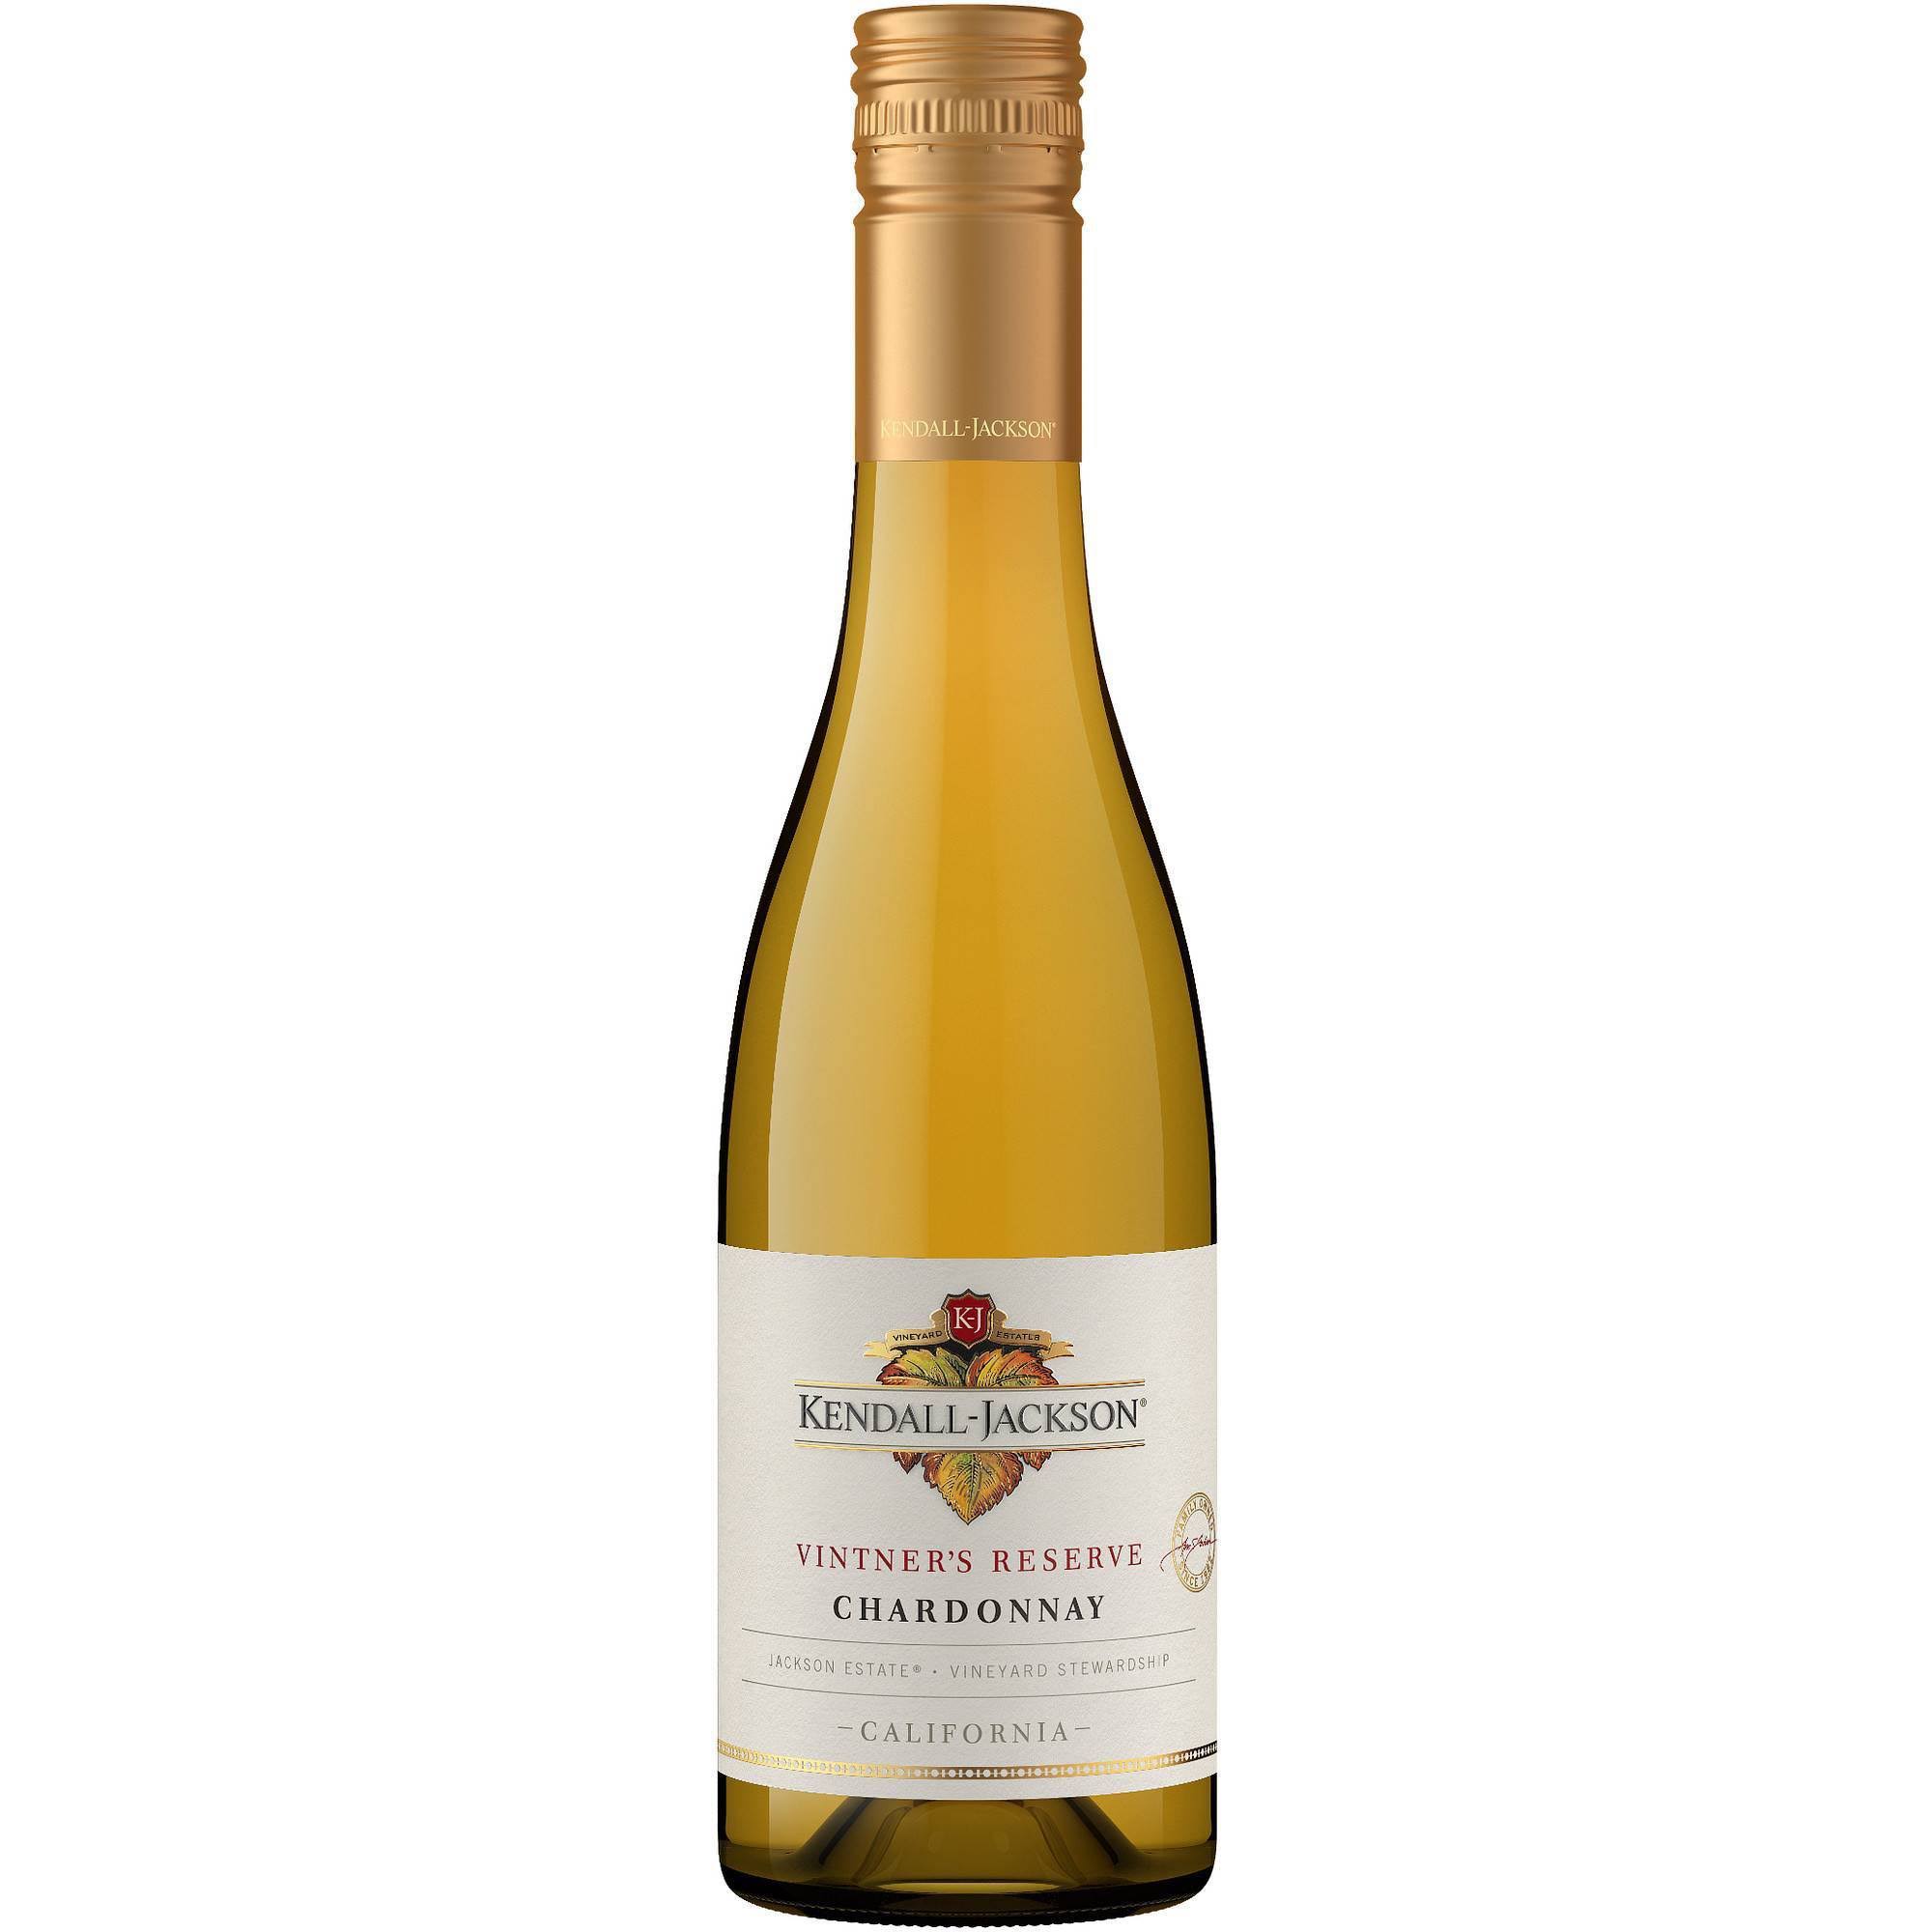 Kendall-Jackson Vintner's Reserve Chardonnay 375ml White Wine